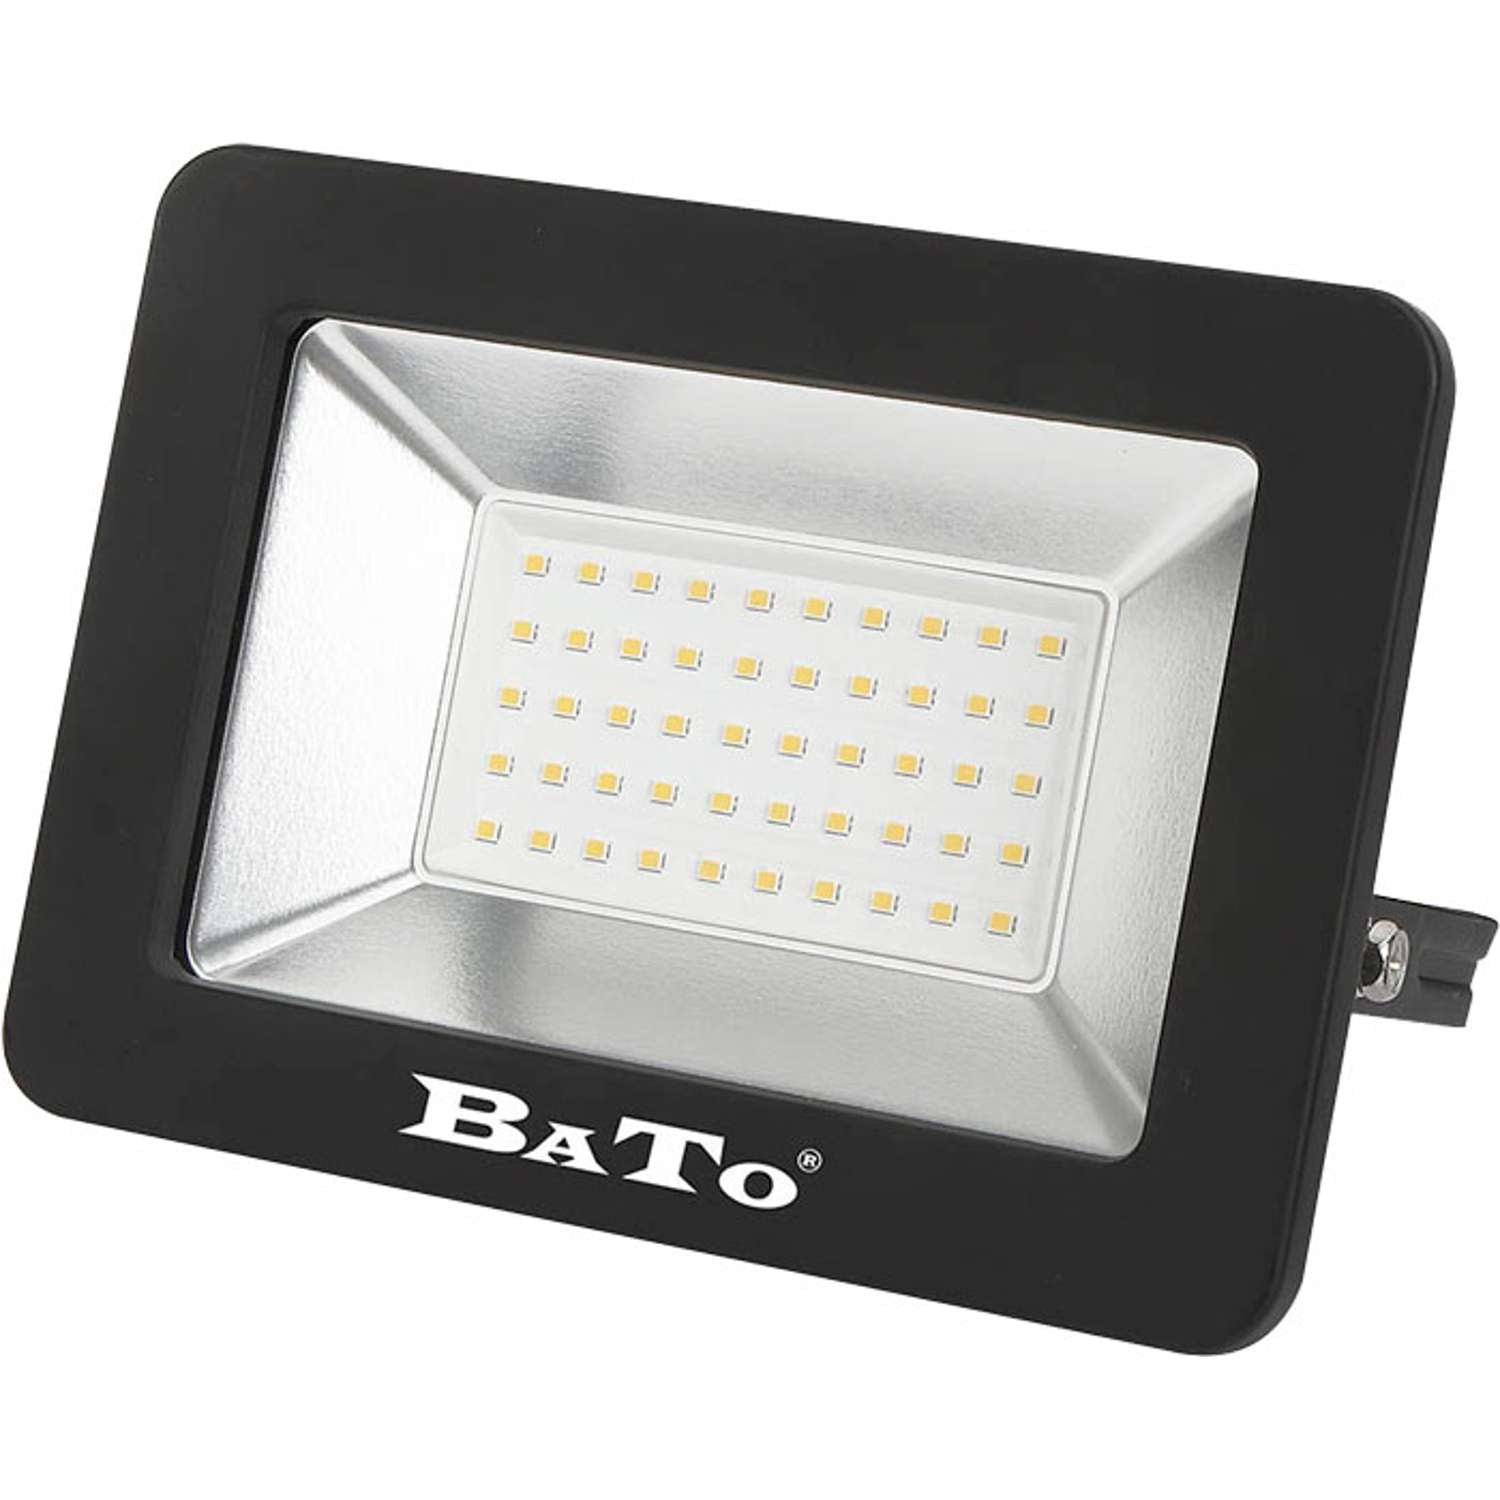 Billede af BATO LED Projektør 50W lampe 4000 Lumen.